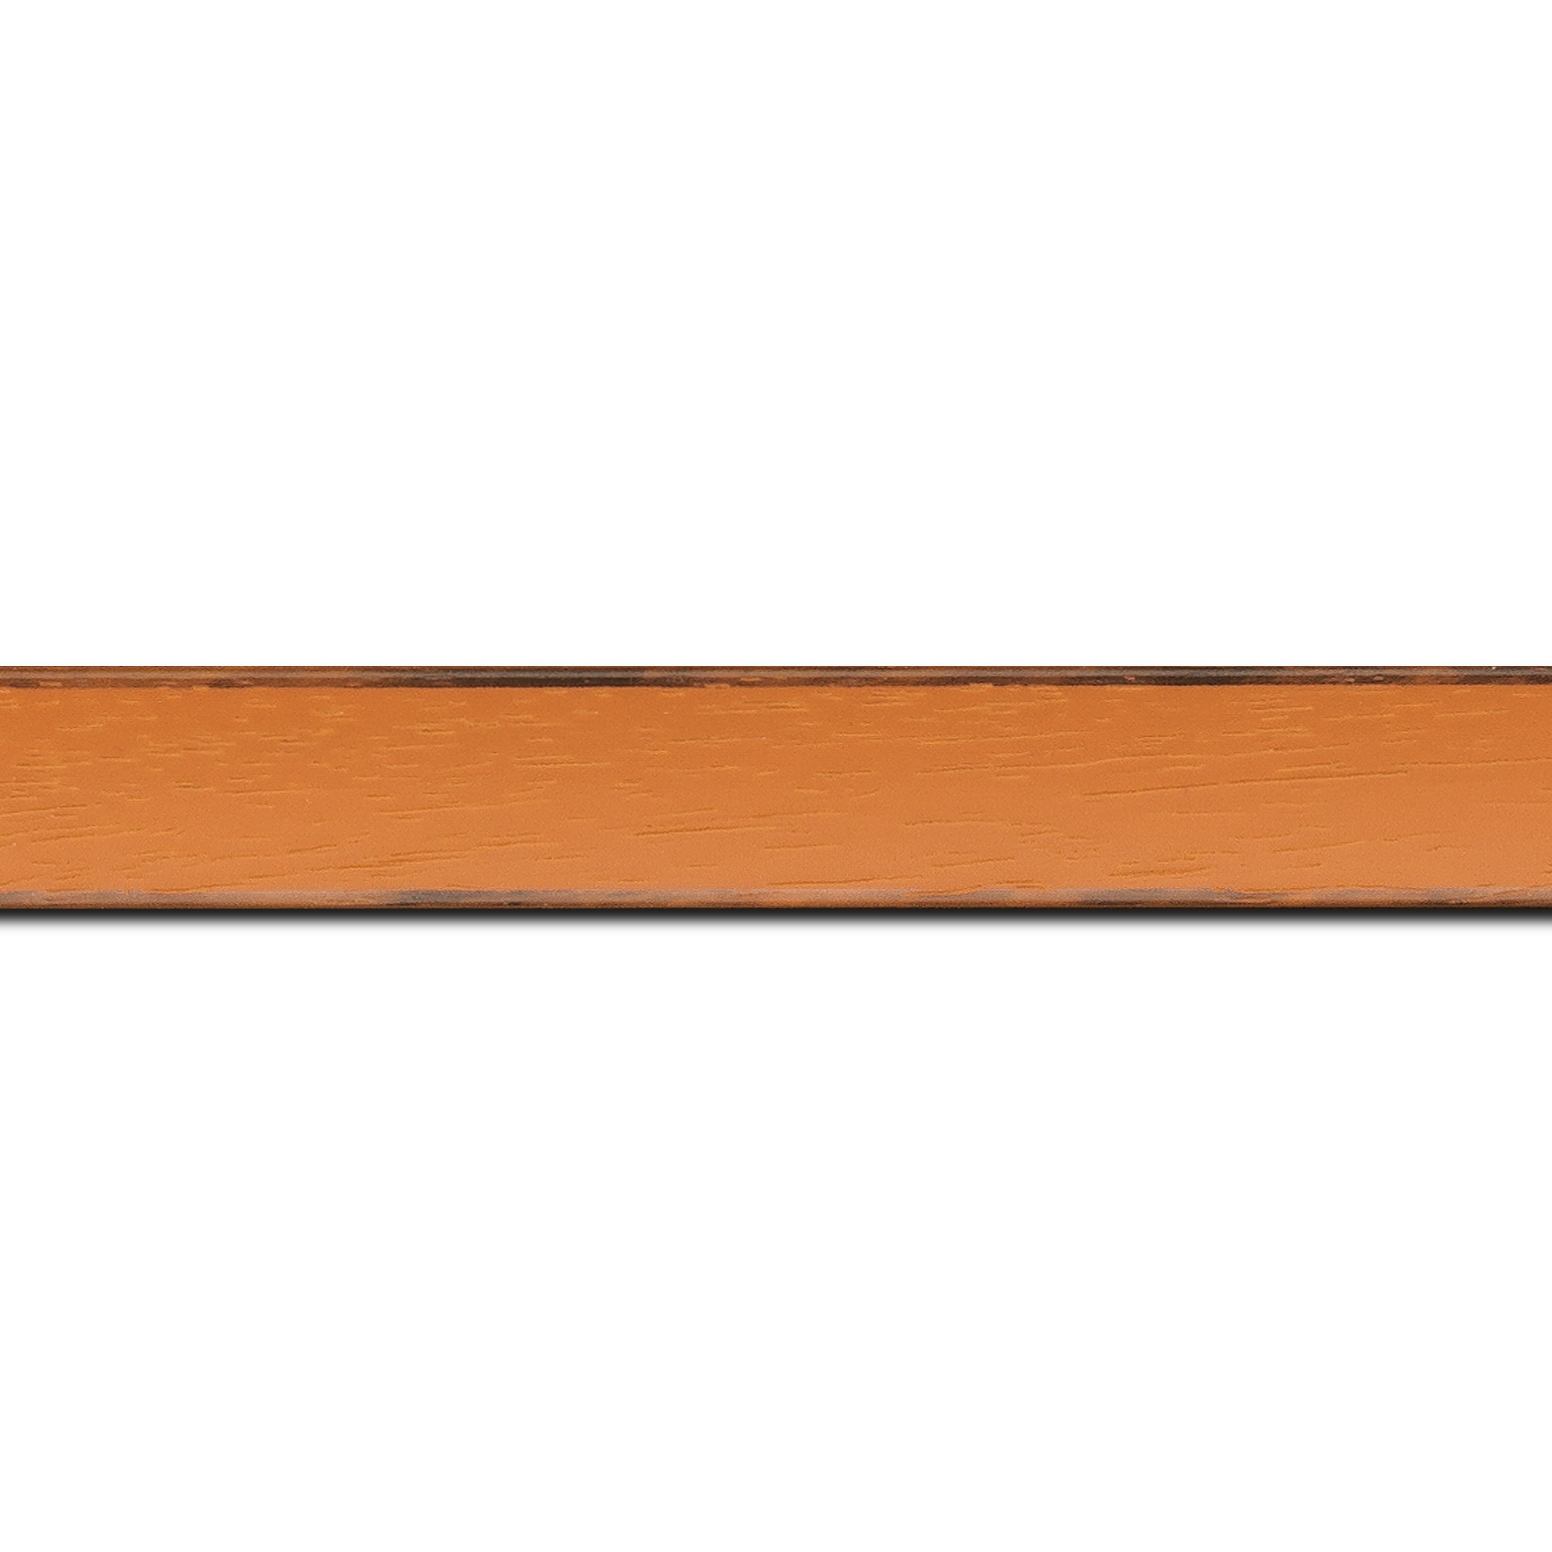 Pack par 12m, bois profil concave largeur 2.4cm couleur orange tonique  satiné  arêtes essuyés noircies de chaque coté  (longueur baguette pouvant varier entre 2.40m et 3m selon arrivage des bois)